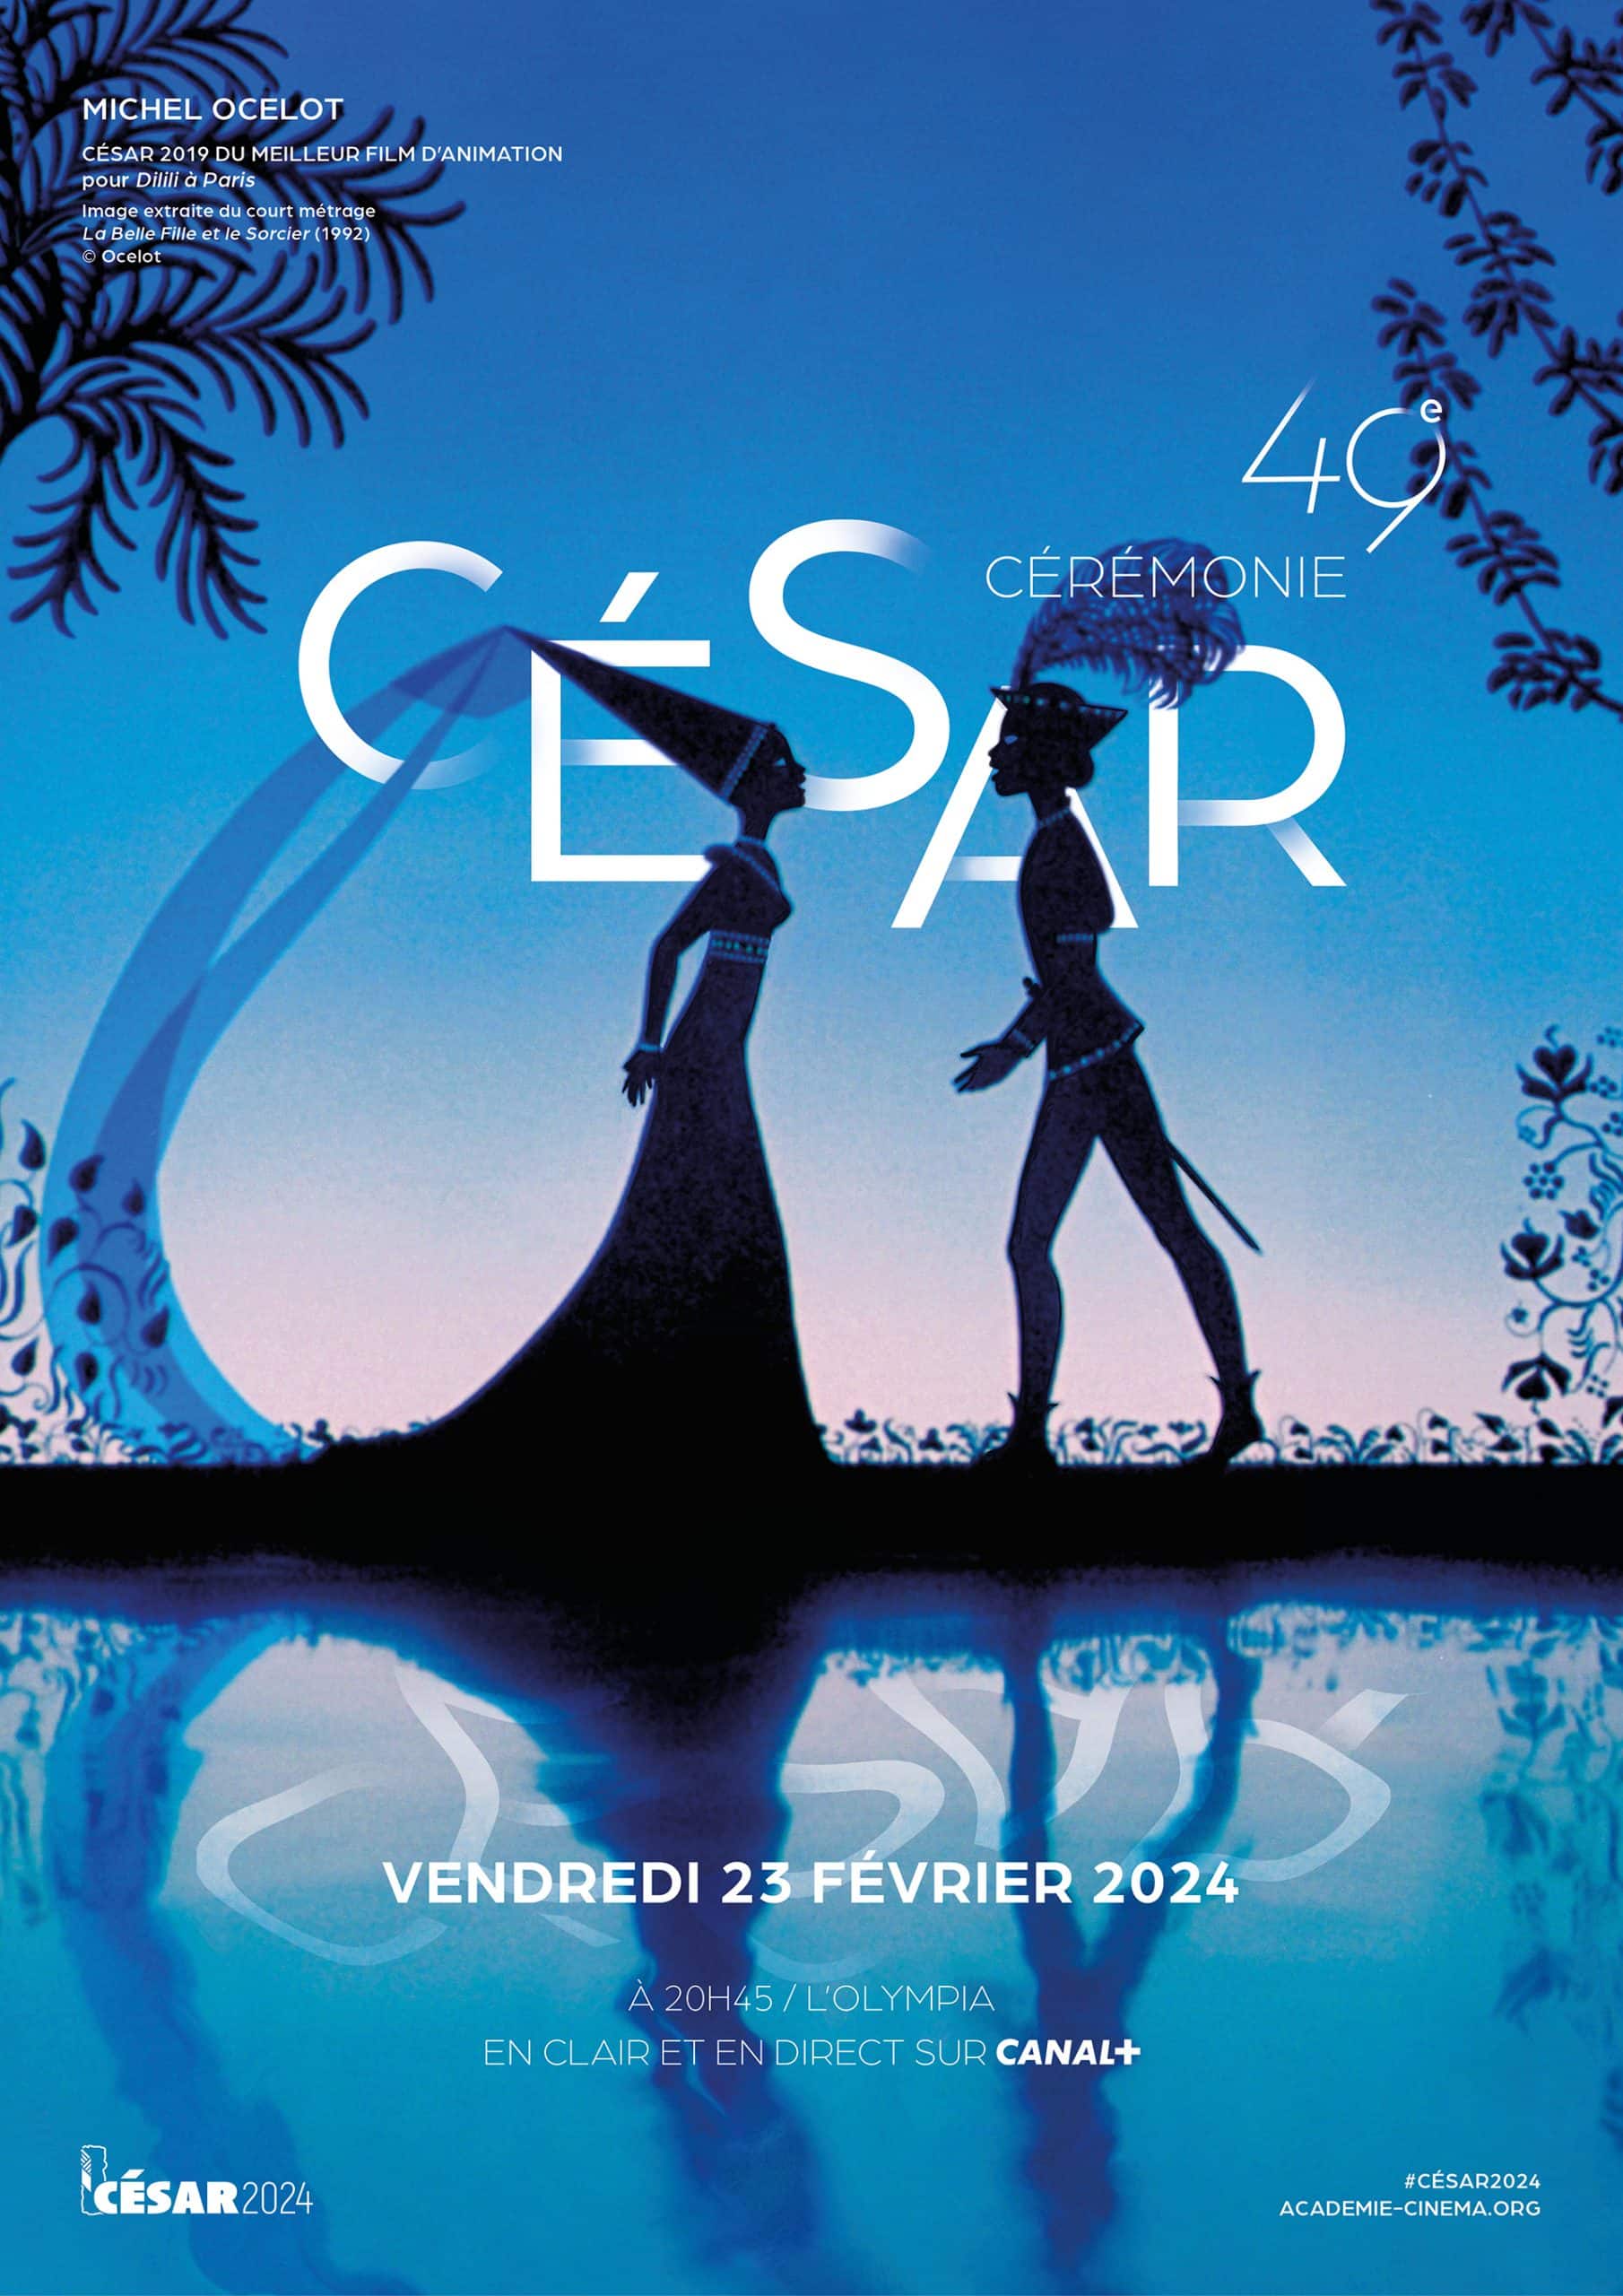 L'Affiche de la 49e Cérémonie des César : Un Hommage à Michel Ocelot et à l'Animation